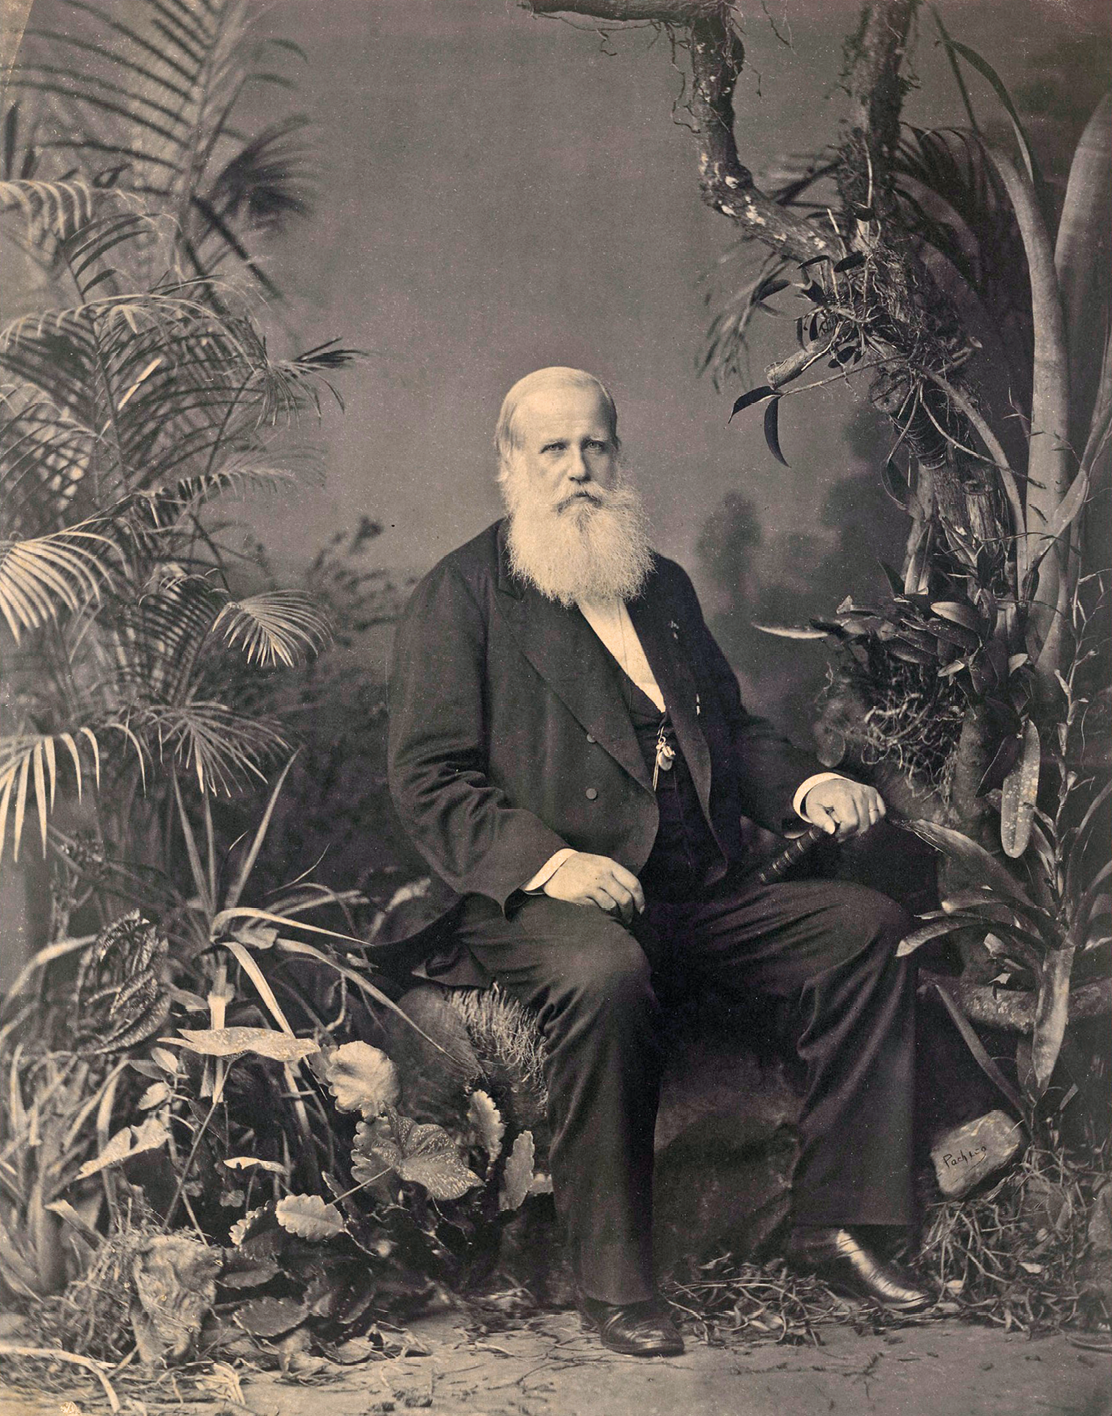 Fotografia. Retrato de corpo inteiro de D. Pedro II, um homem de cabelo branco e curto penteado para trás, de barba branca e grande, usando terno preto, calça e sapatos pretos, está sentado sobre uma poltrona escura com a mão direita sobre a perna. Ao lado há diversas plantas.